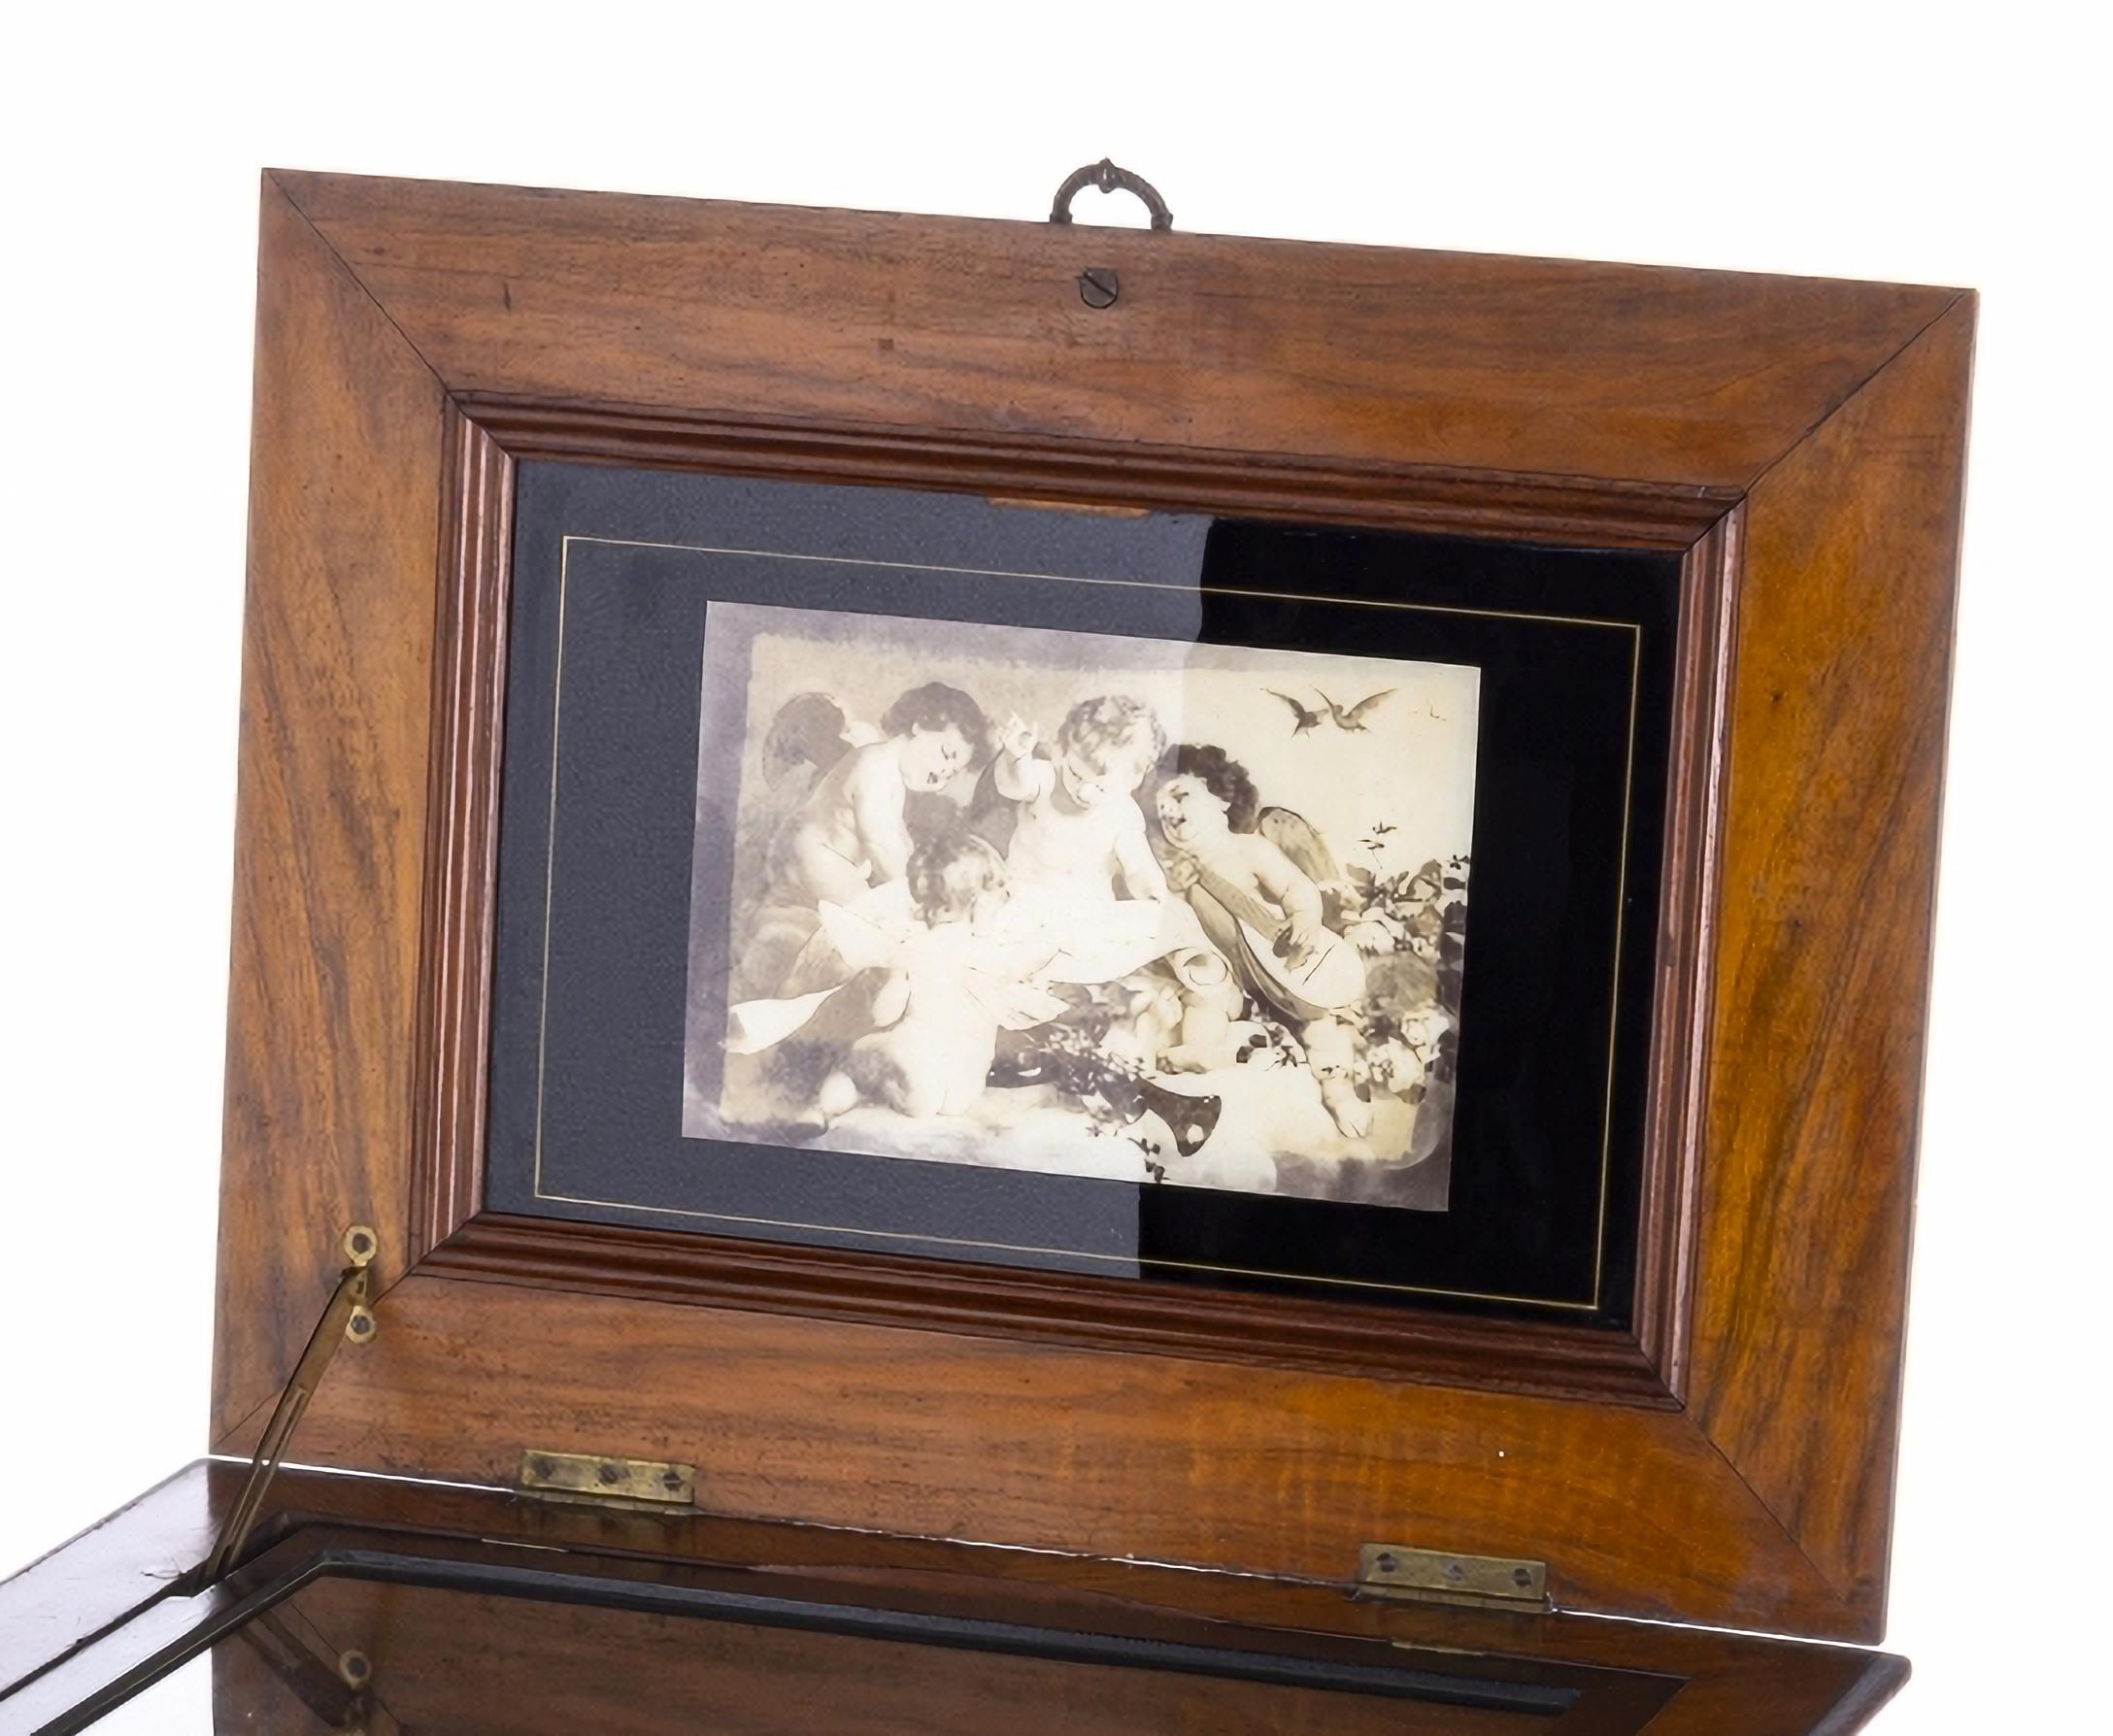 RARE BOÎTE À MUSIQUE EUROPÉENNE
19ème siècle
Européen, boîte avec 50 disques de 30 cm, double peigne, fabriqué à la fin du 19ème siècle. 
Oeil de pierre coiffé d'une application métallique. 
Dessus décoré de motifs d'oiseaux et de plantes.